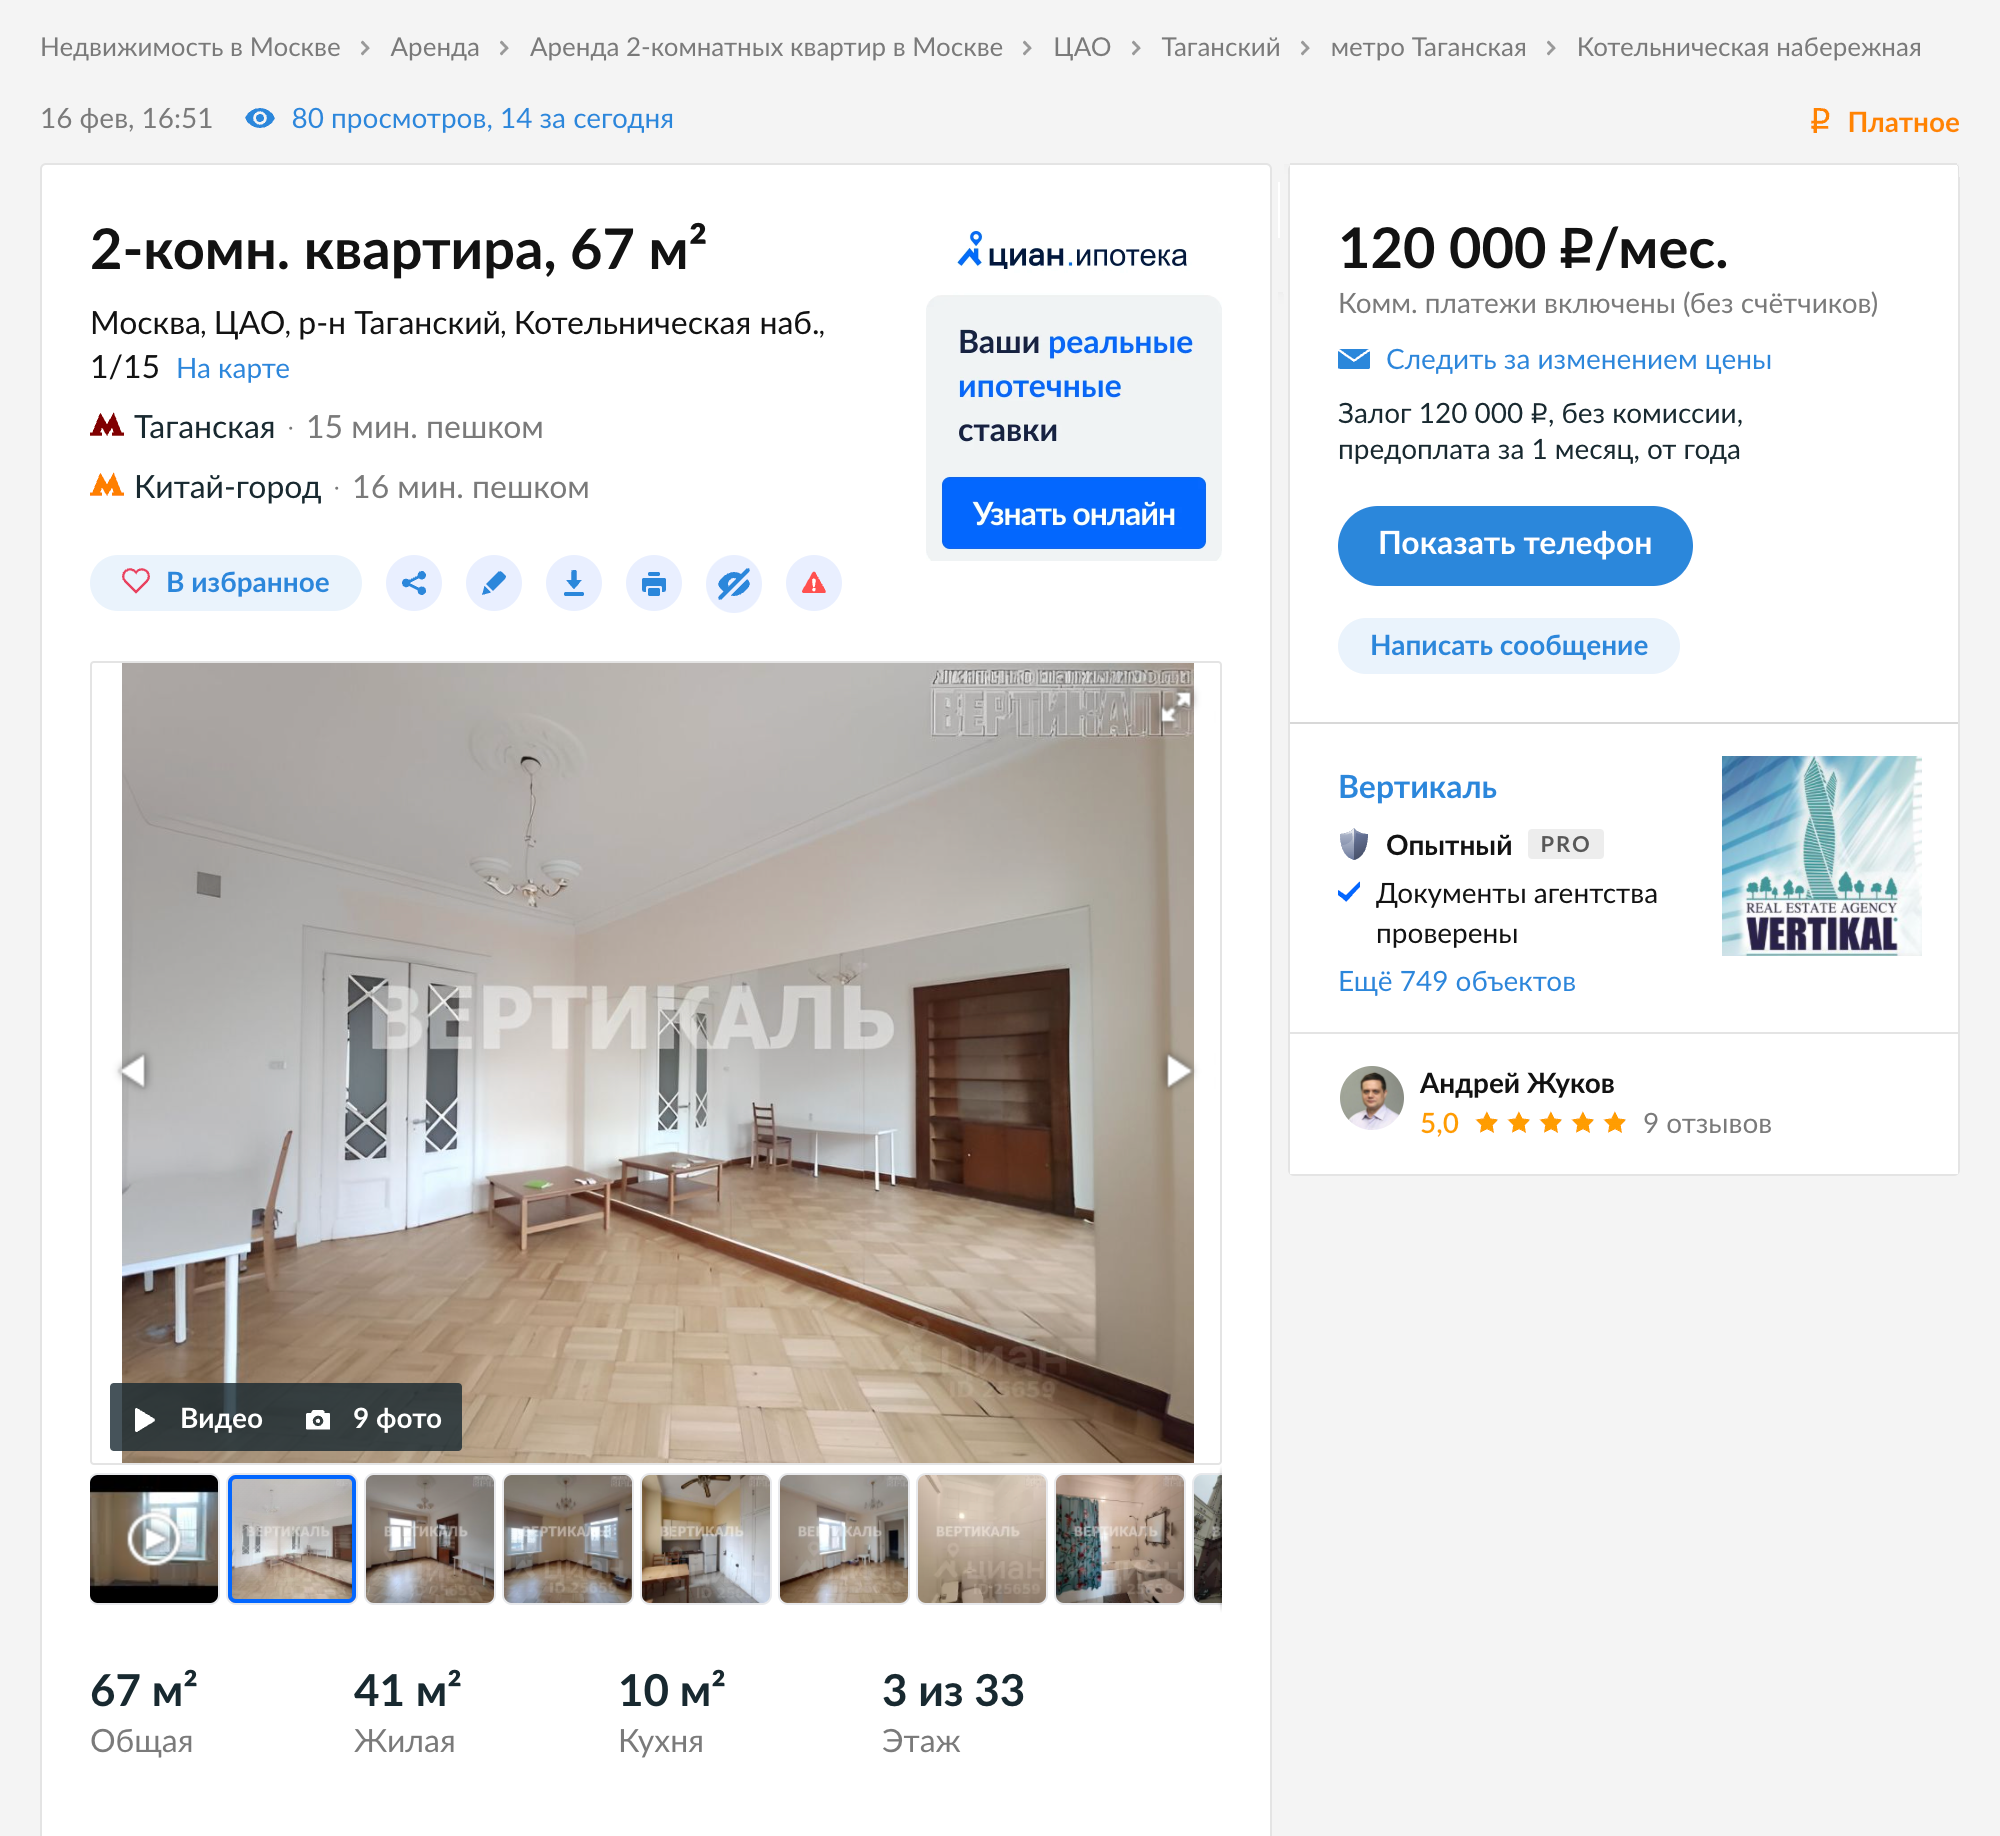 Если верить «Циану», сейчас в доме на Котельнической не сдается ни одна комната. А самая дешевая квартира — двушка площадью 67 м² — обойдется в 120 000 ₽ в месяц. Источник: cian.ru